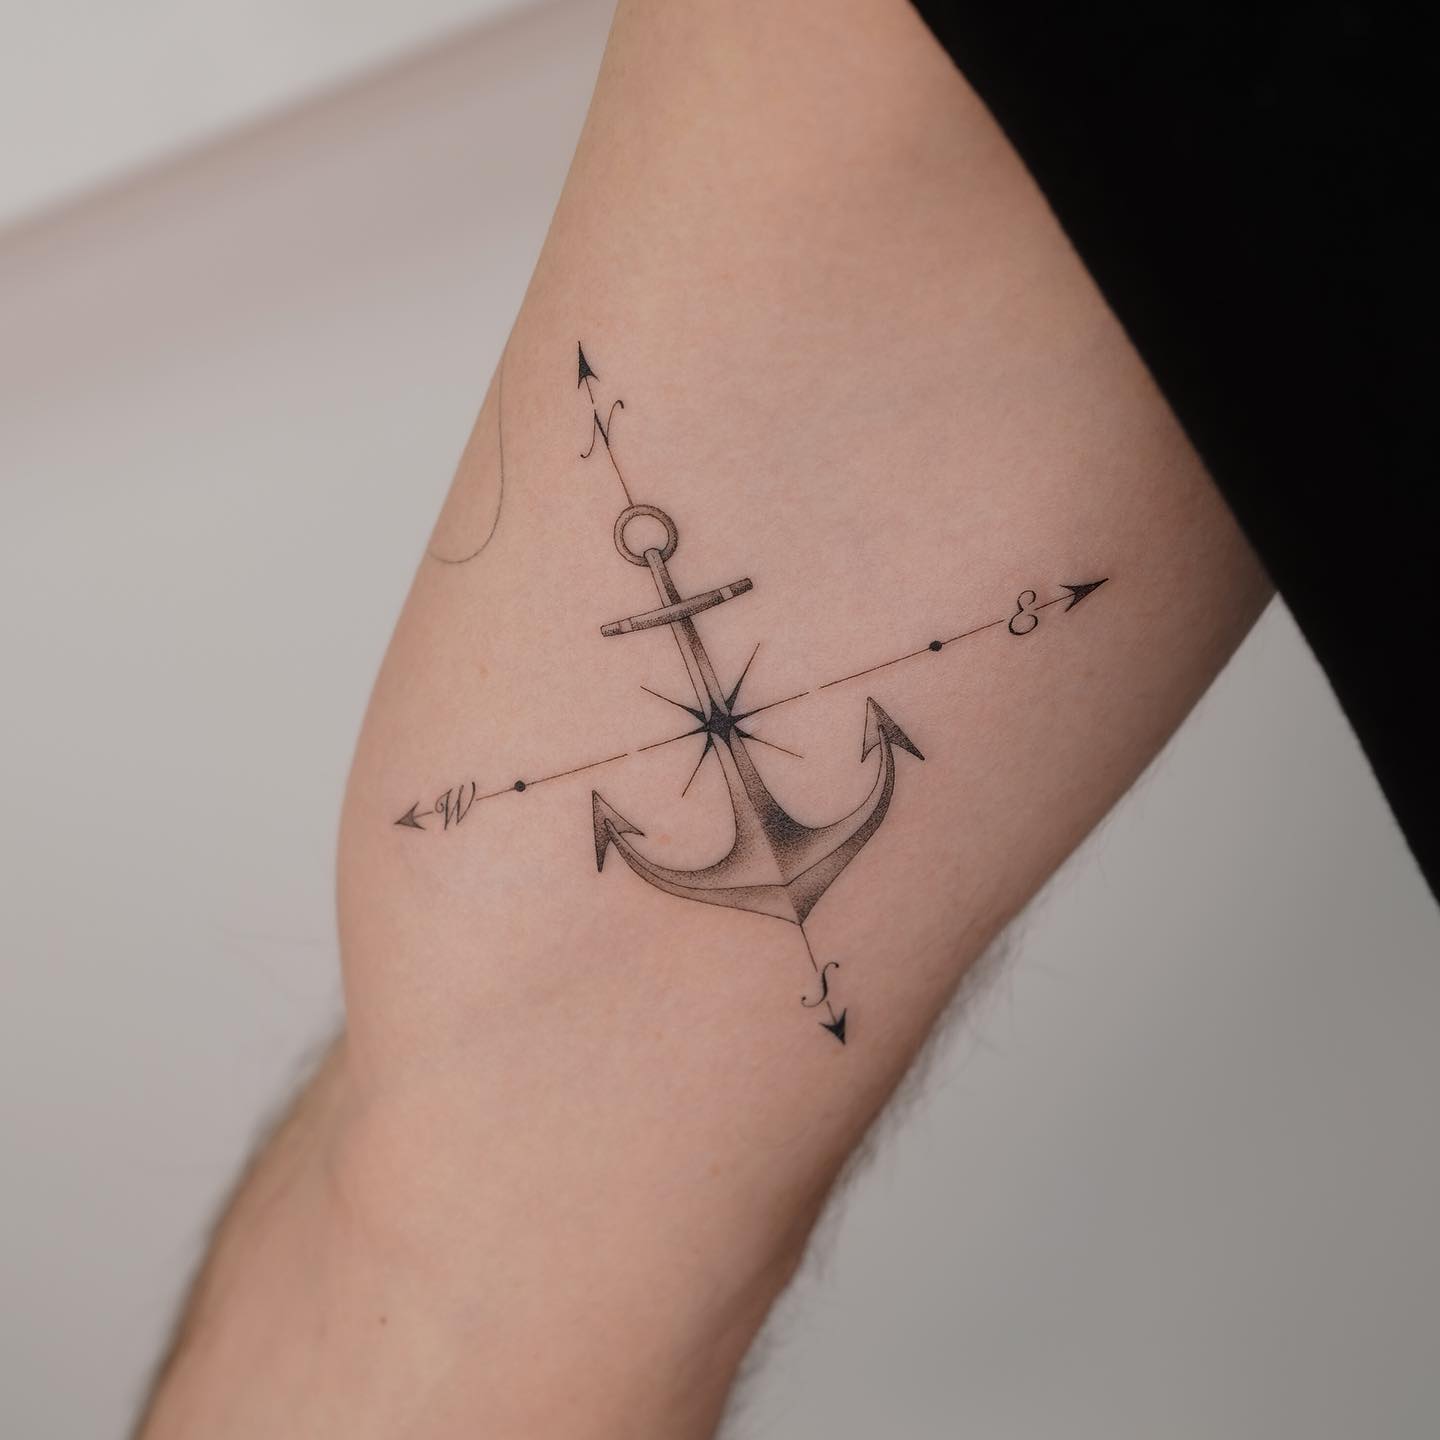 Anchor tattoo deisgn by jjjaylud